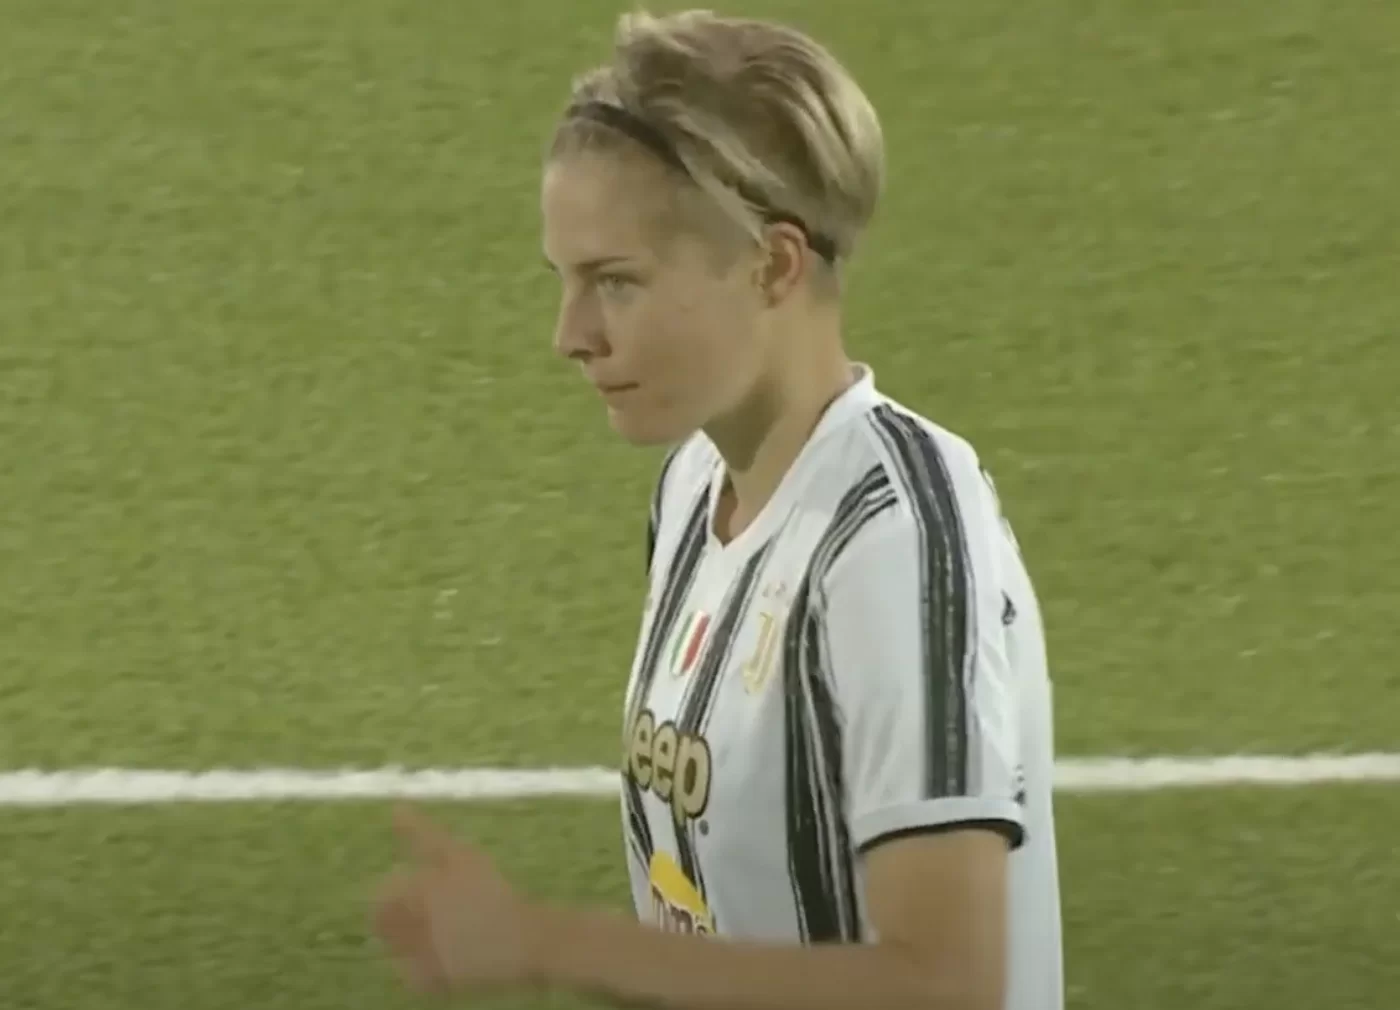 Juventus Women, la svedese Hurtig comunica la dolce attesa della compagna Lisa Lantz: “Siamo incinte!”